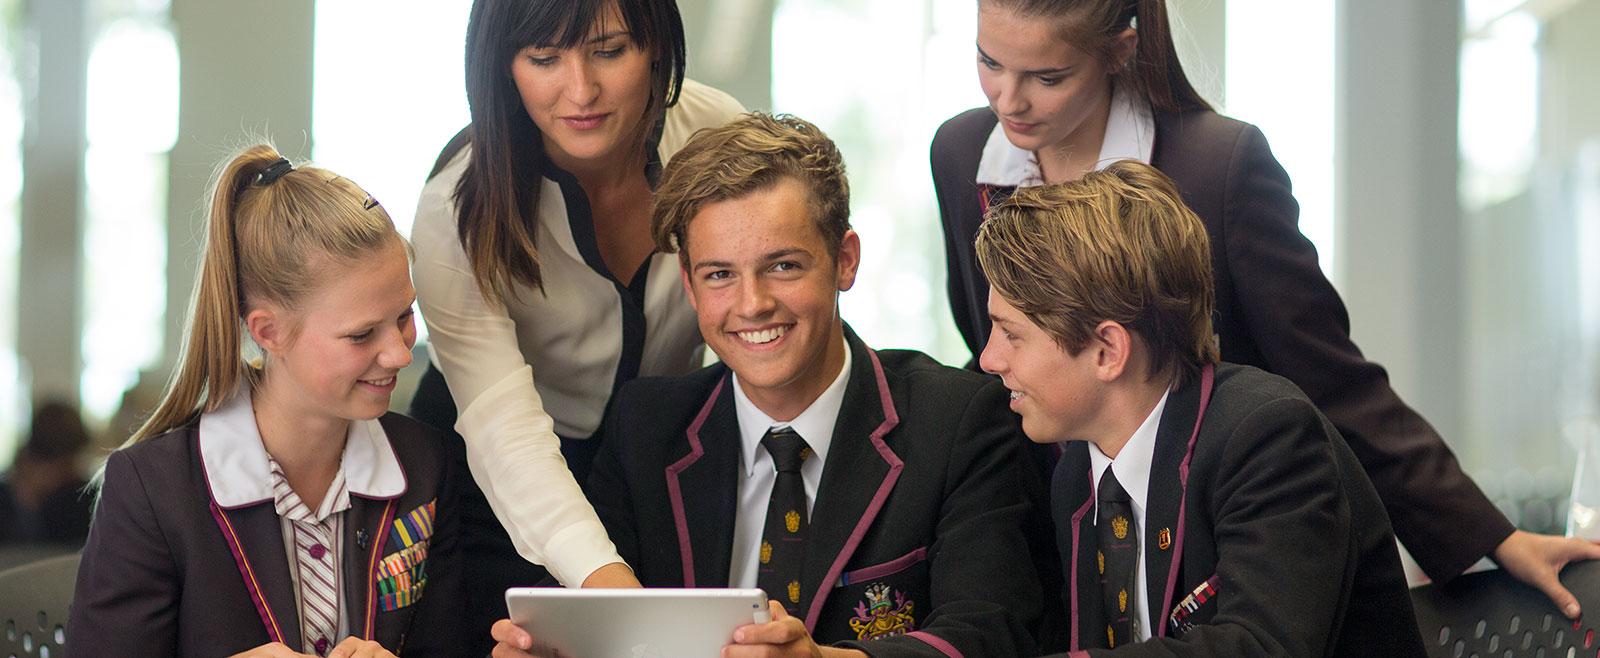 نظام التعليم الاسترالي - نظام التعليم في استراليا - طلاب